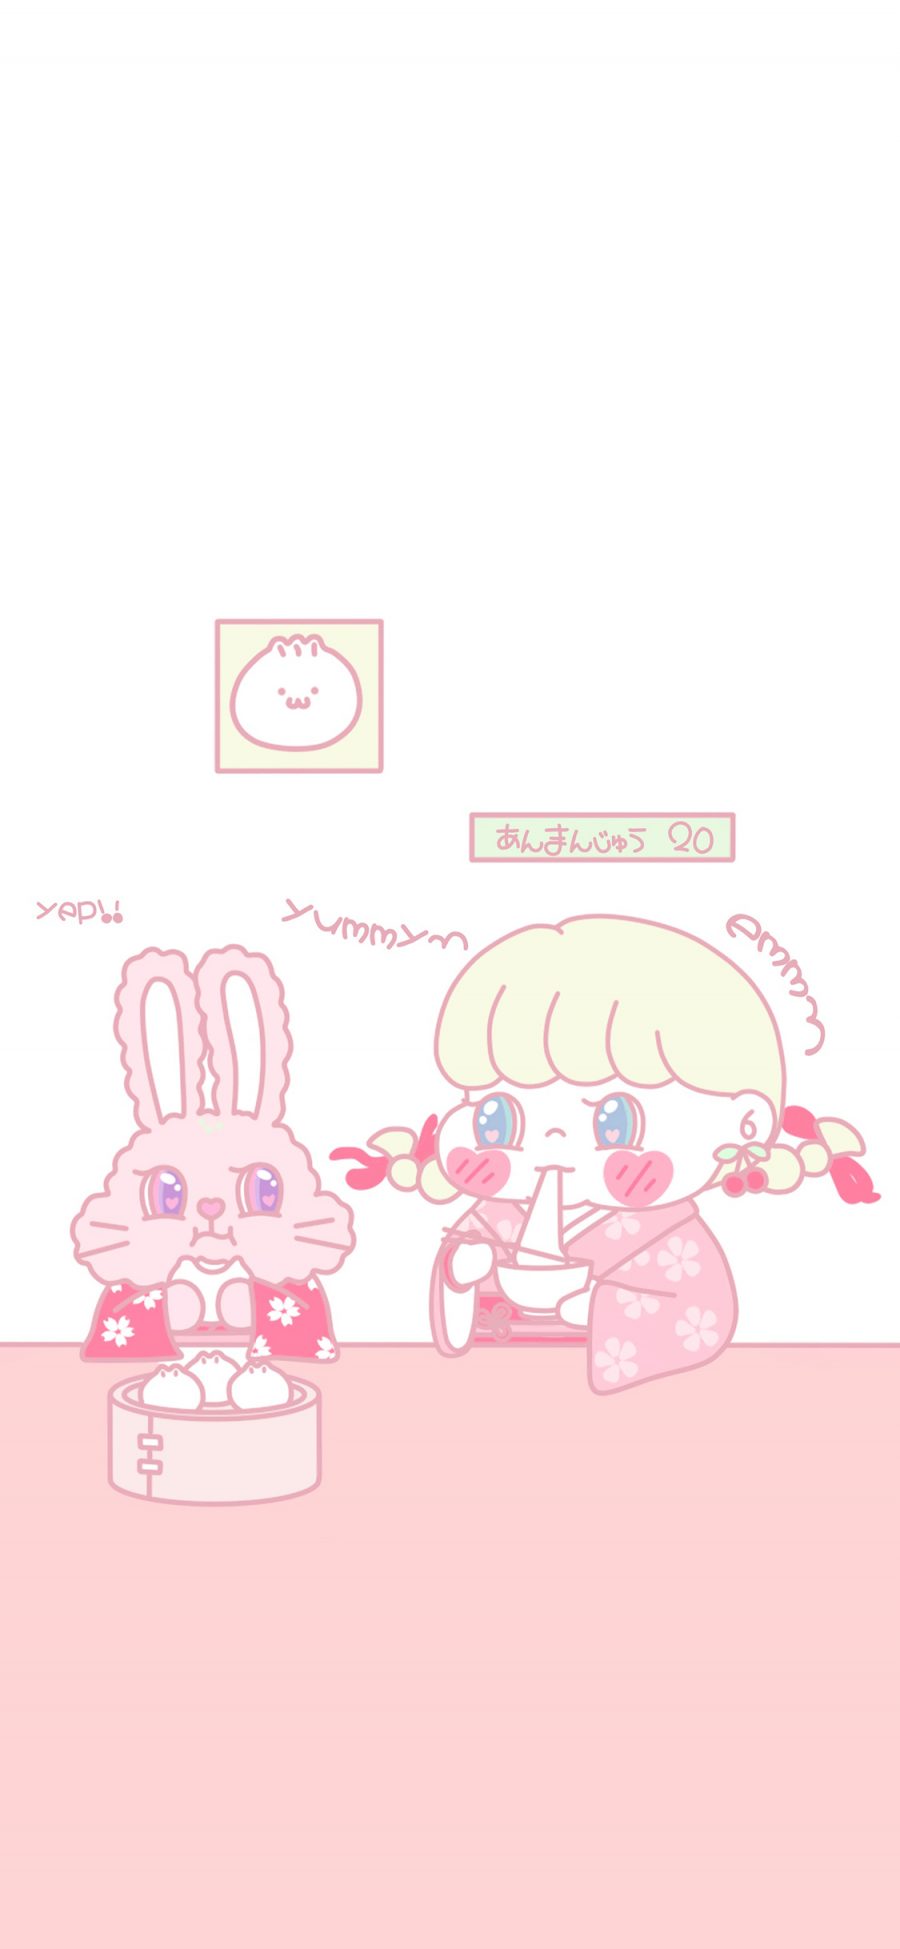 [2436×1125]萌咔便利店 小女孩 和服 包子 吃 粉色 苹果手机动漫壁纸图片